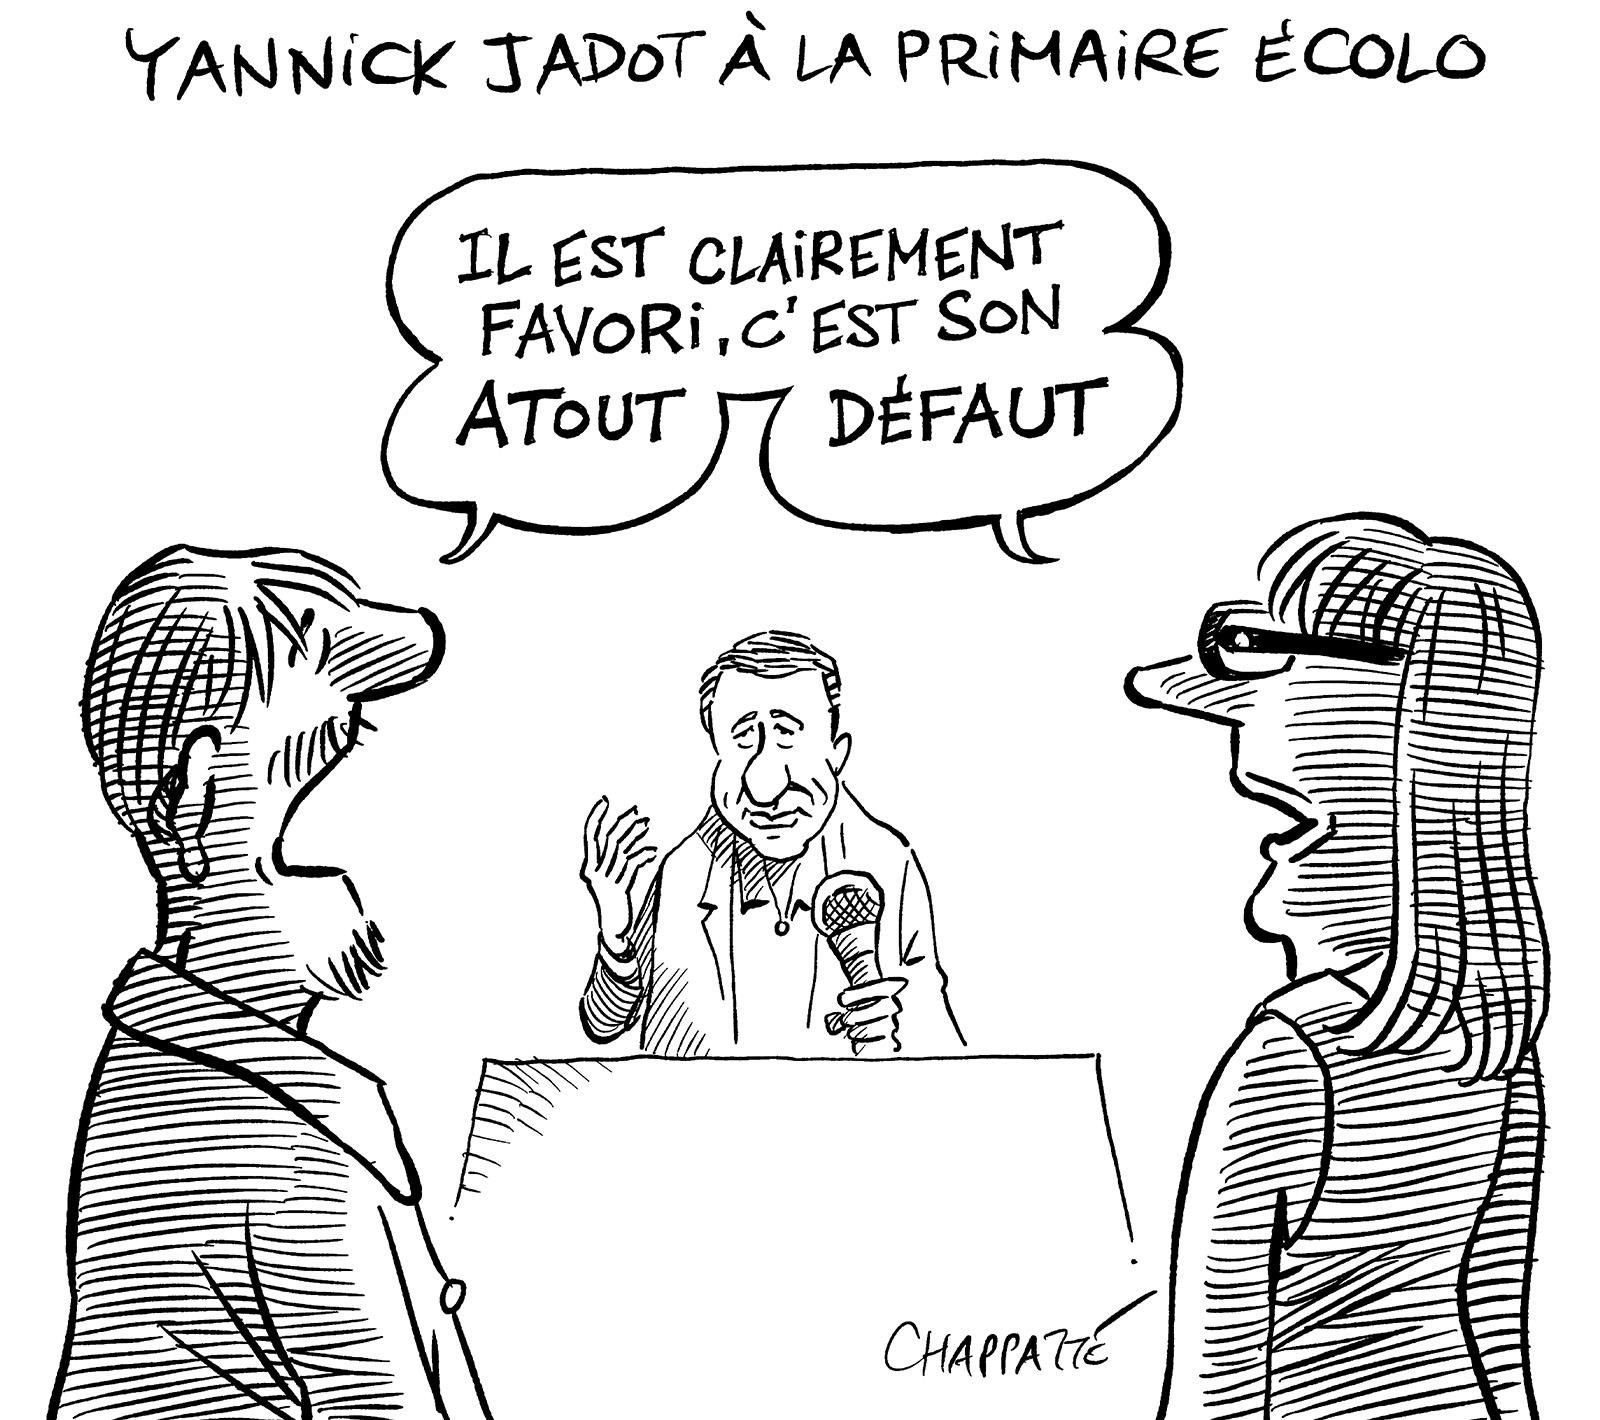 Yannick Jadot à la primaire écolo